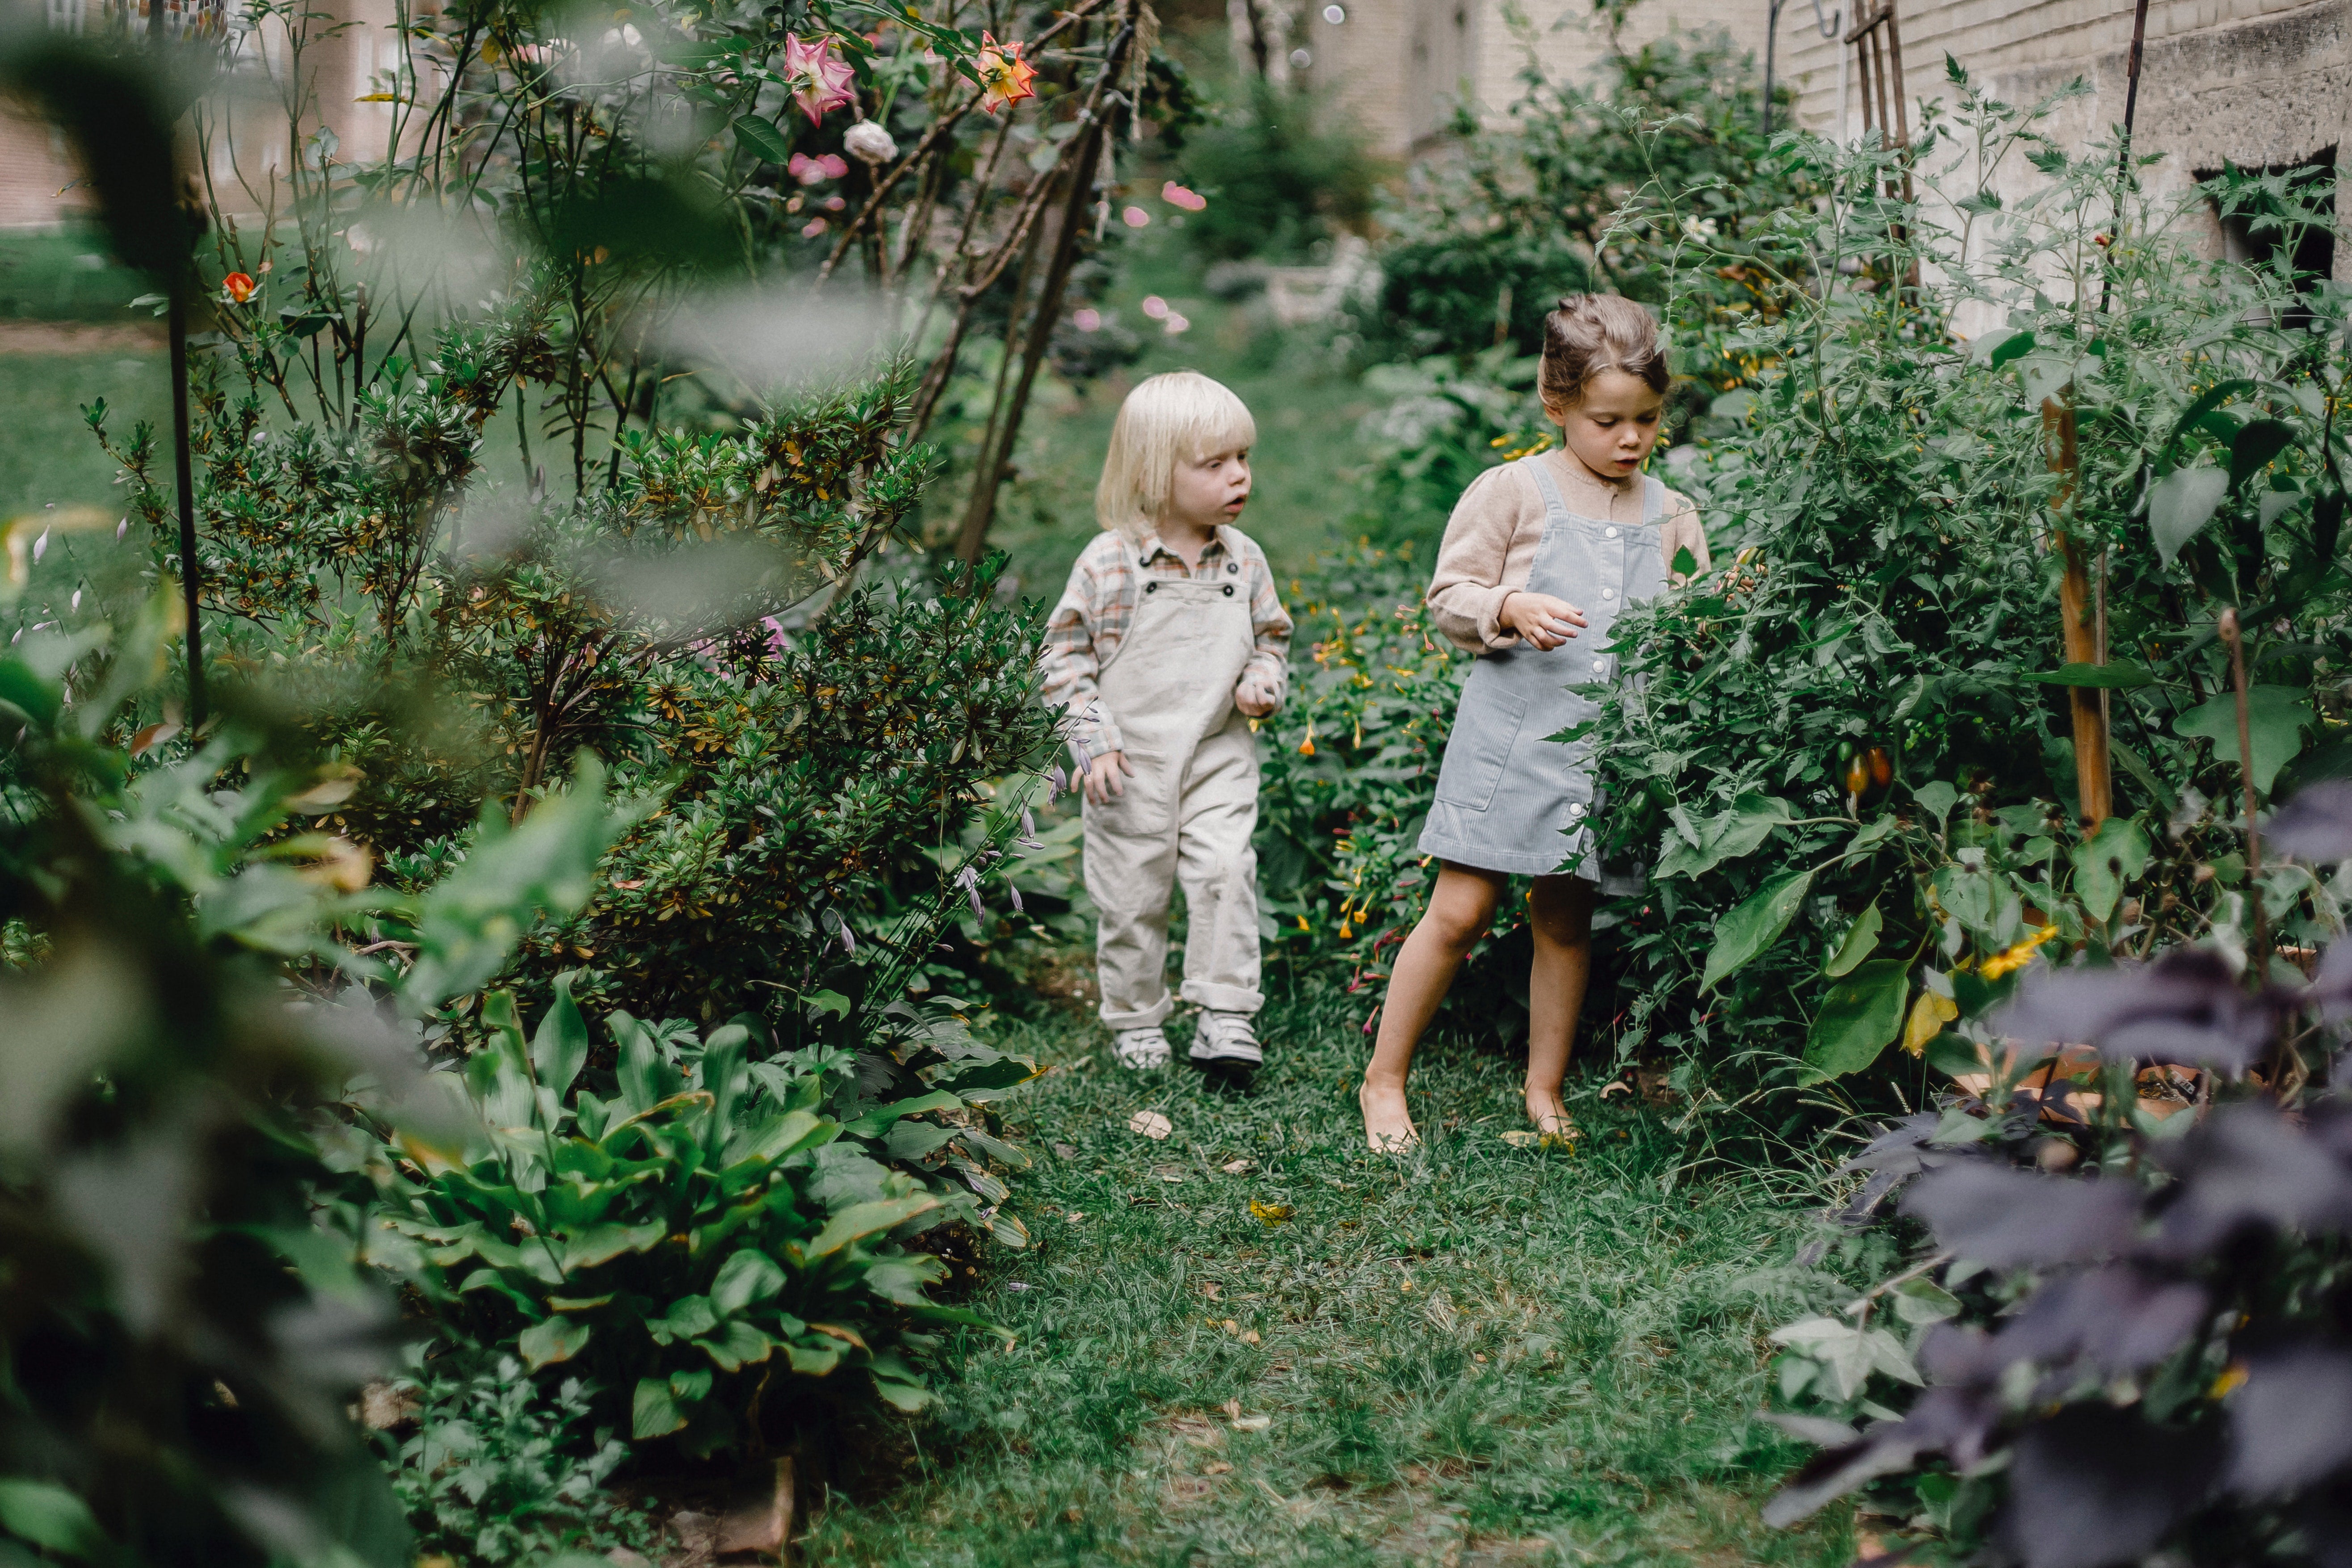 Children exploring a garden